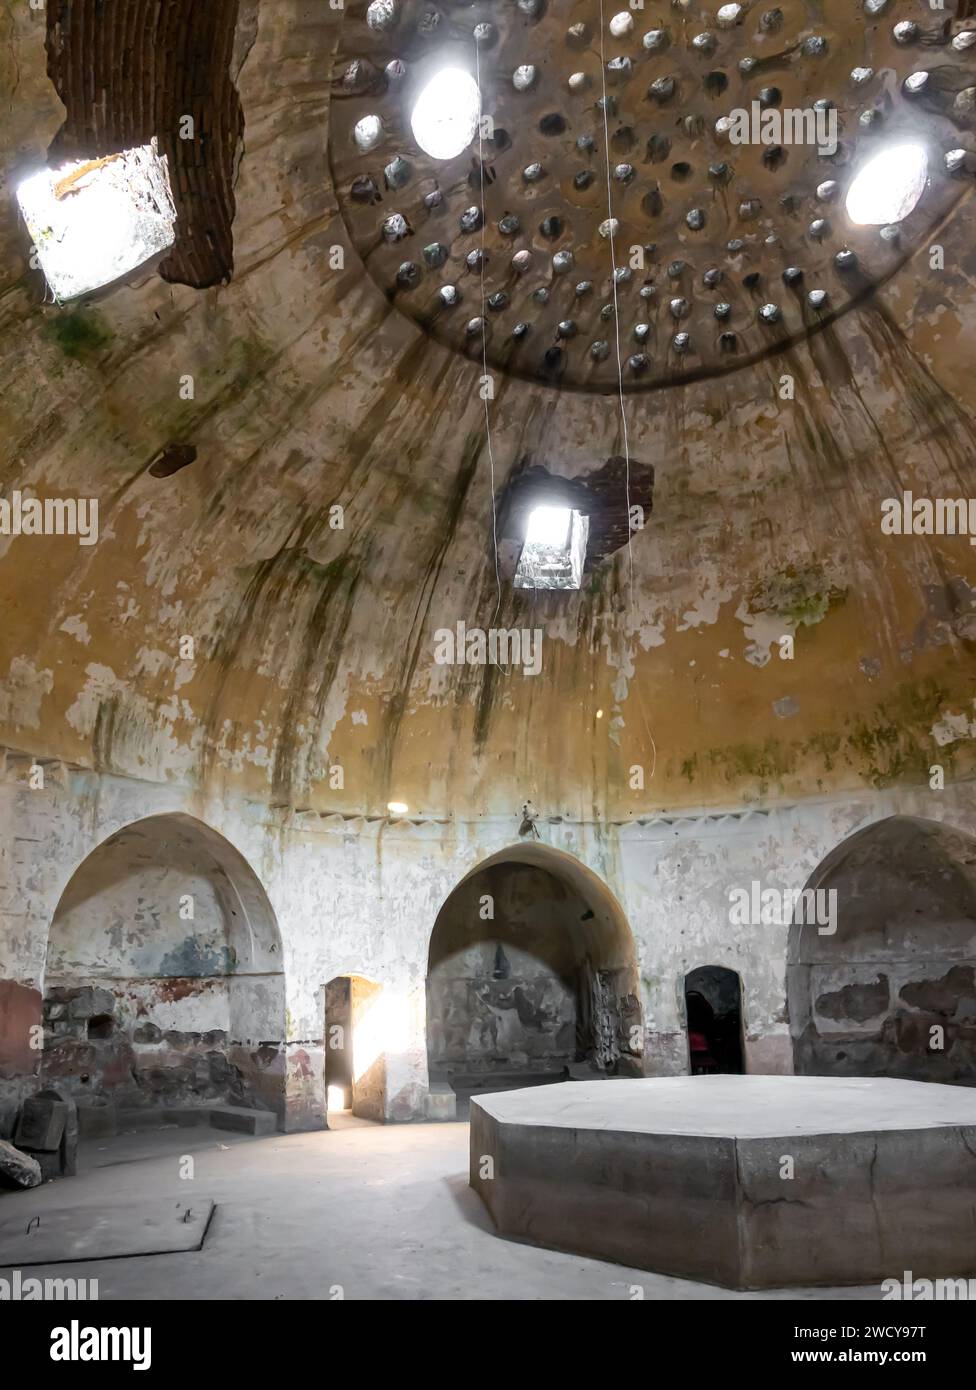 Das historische DEVE Hamam, oder Deva Bath, DEVE Hamam, wurde im 16. Jahrhundert in einem historischen Wahrzeichen in Diyarbakir, Türkei, erbaut Stockfoto